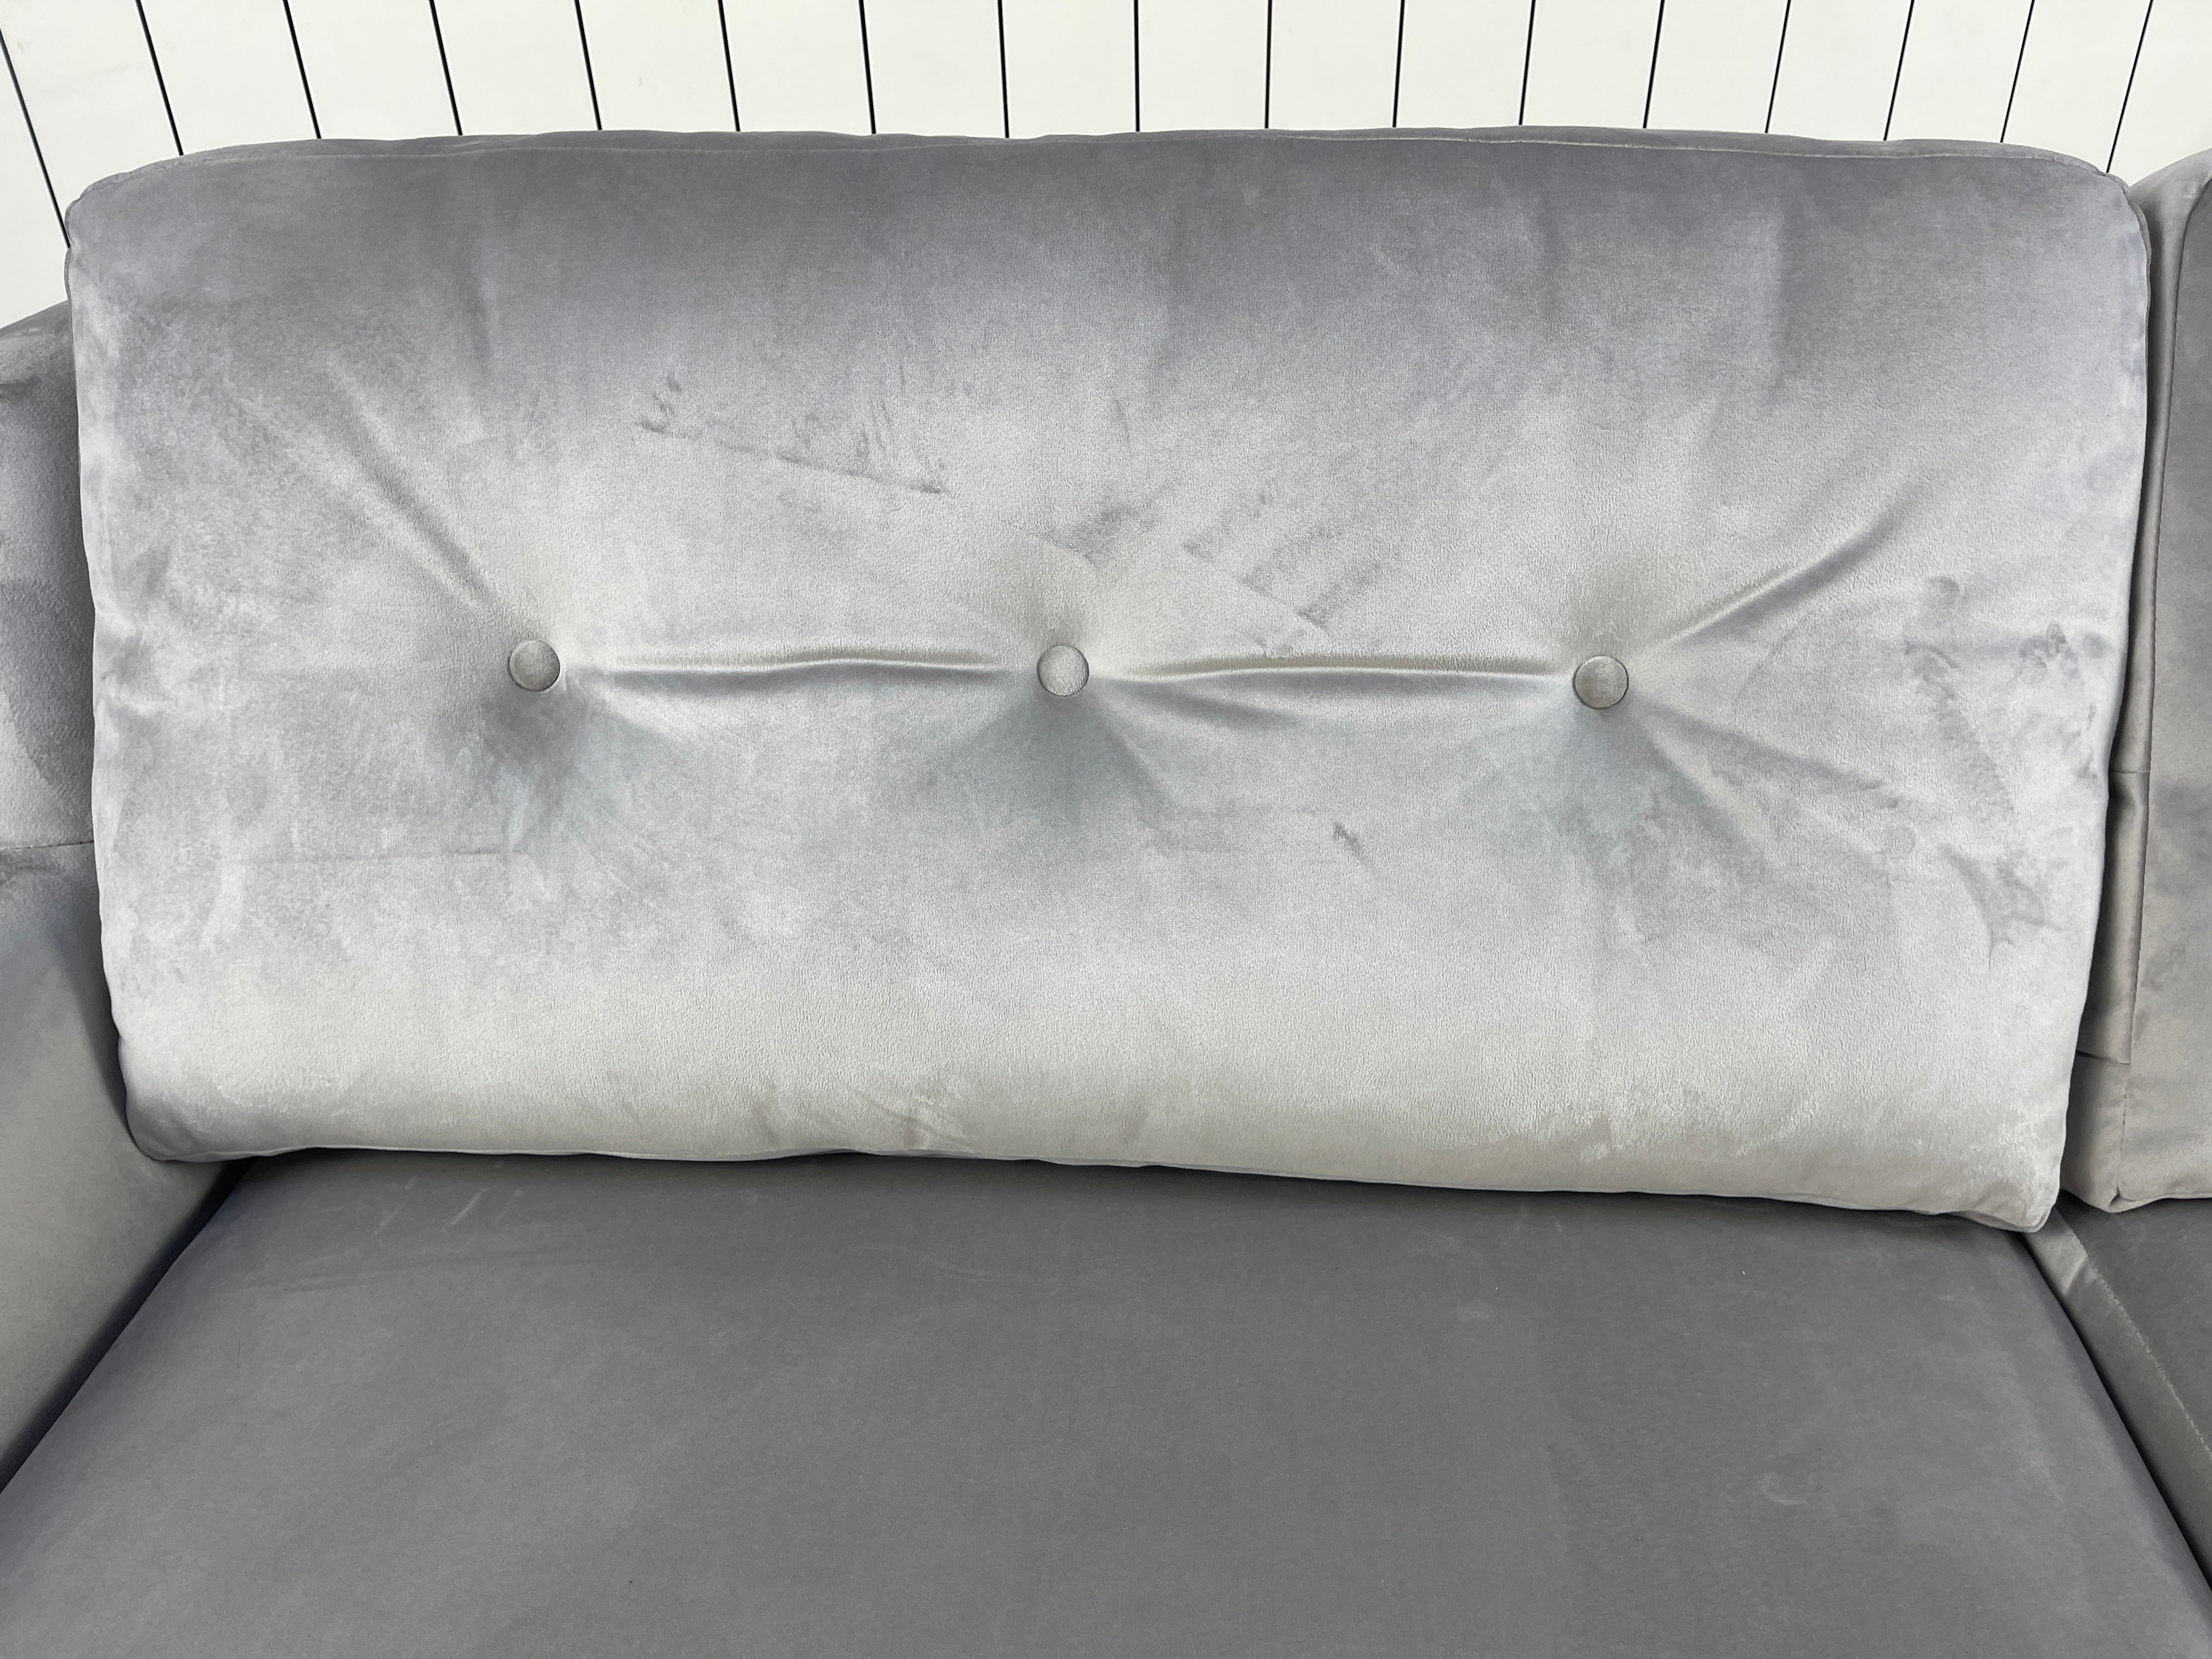 SOFOLOGY OLIVIA 3 seater standard back sofa in silver light grey velvet